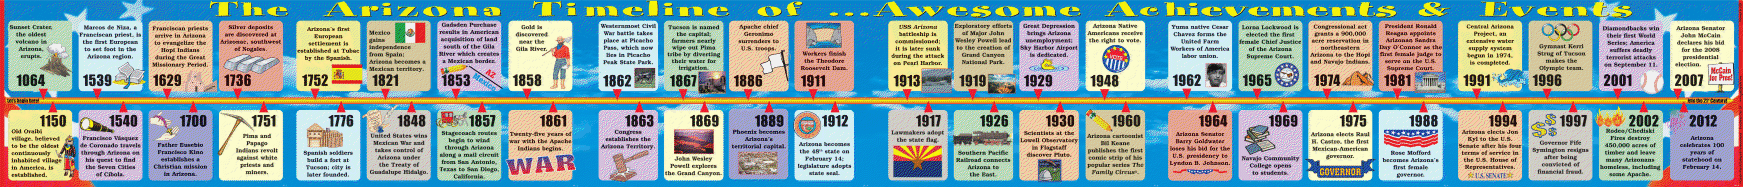 Arizona Big Timeline